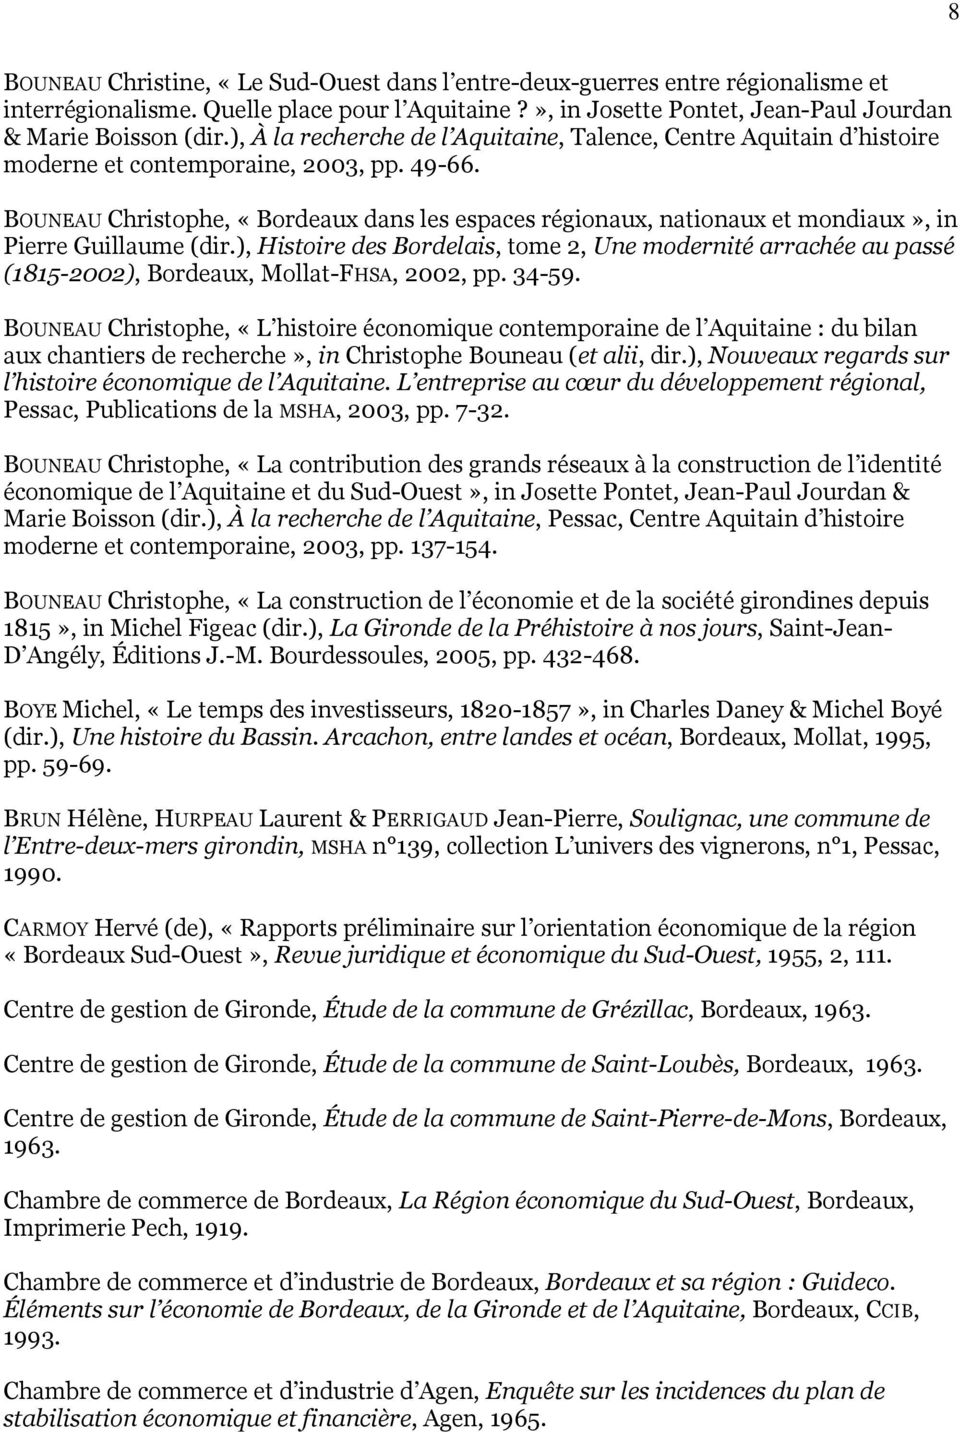 BOUNEAU Christophe, «Bordeaux dans les espaces régionaux, nationaux et mondiaux», in Pierre Guillaume (dir.